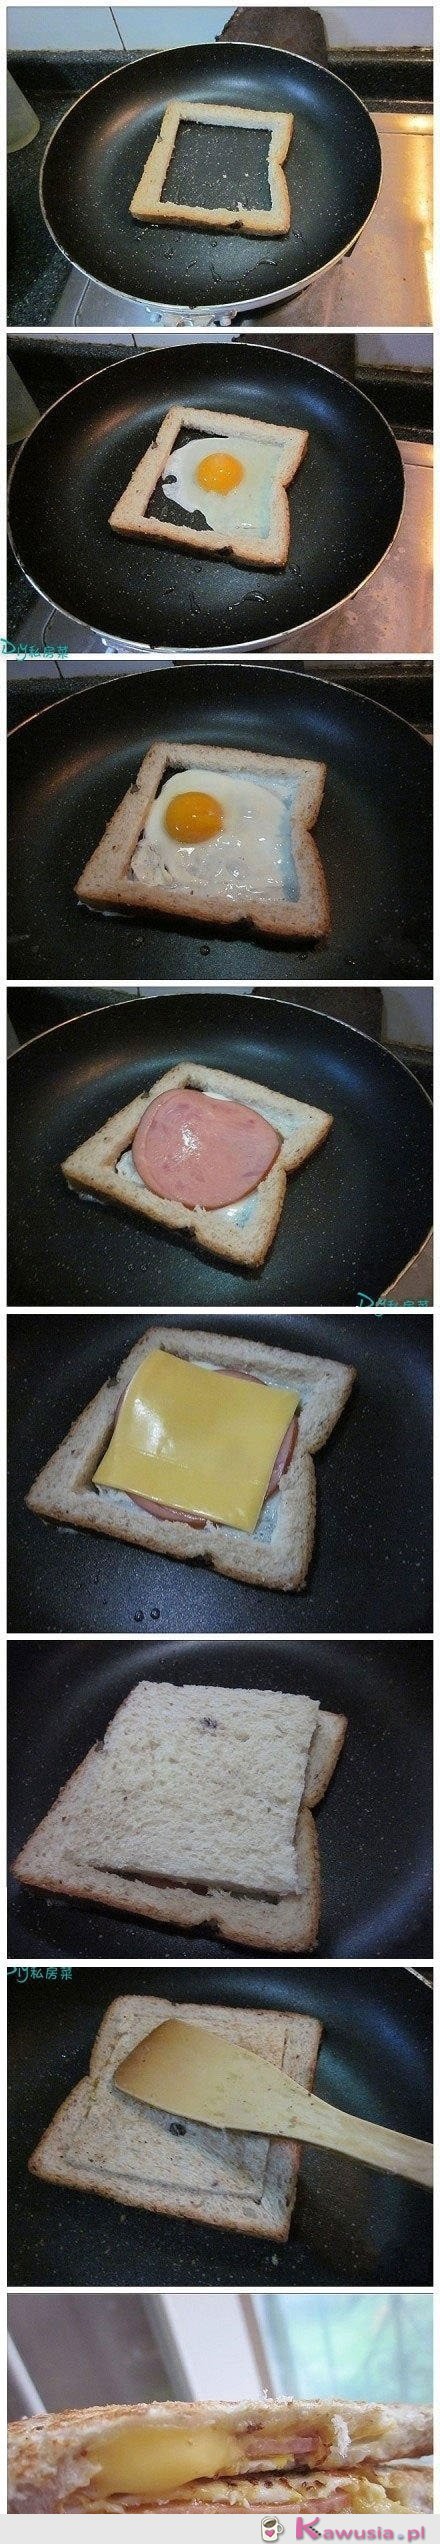 Pomysł na tosty